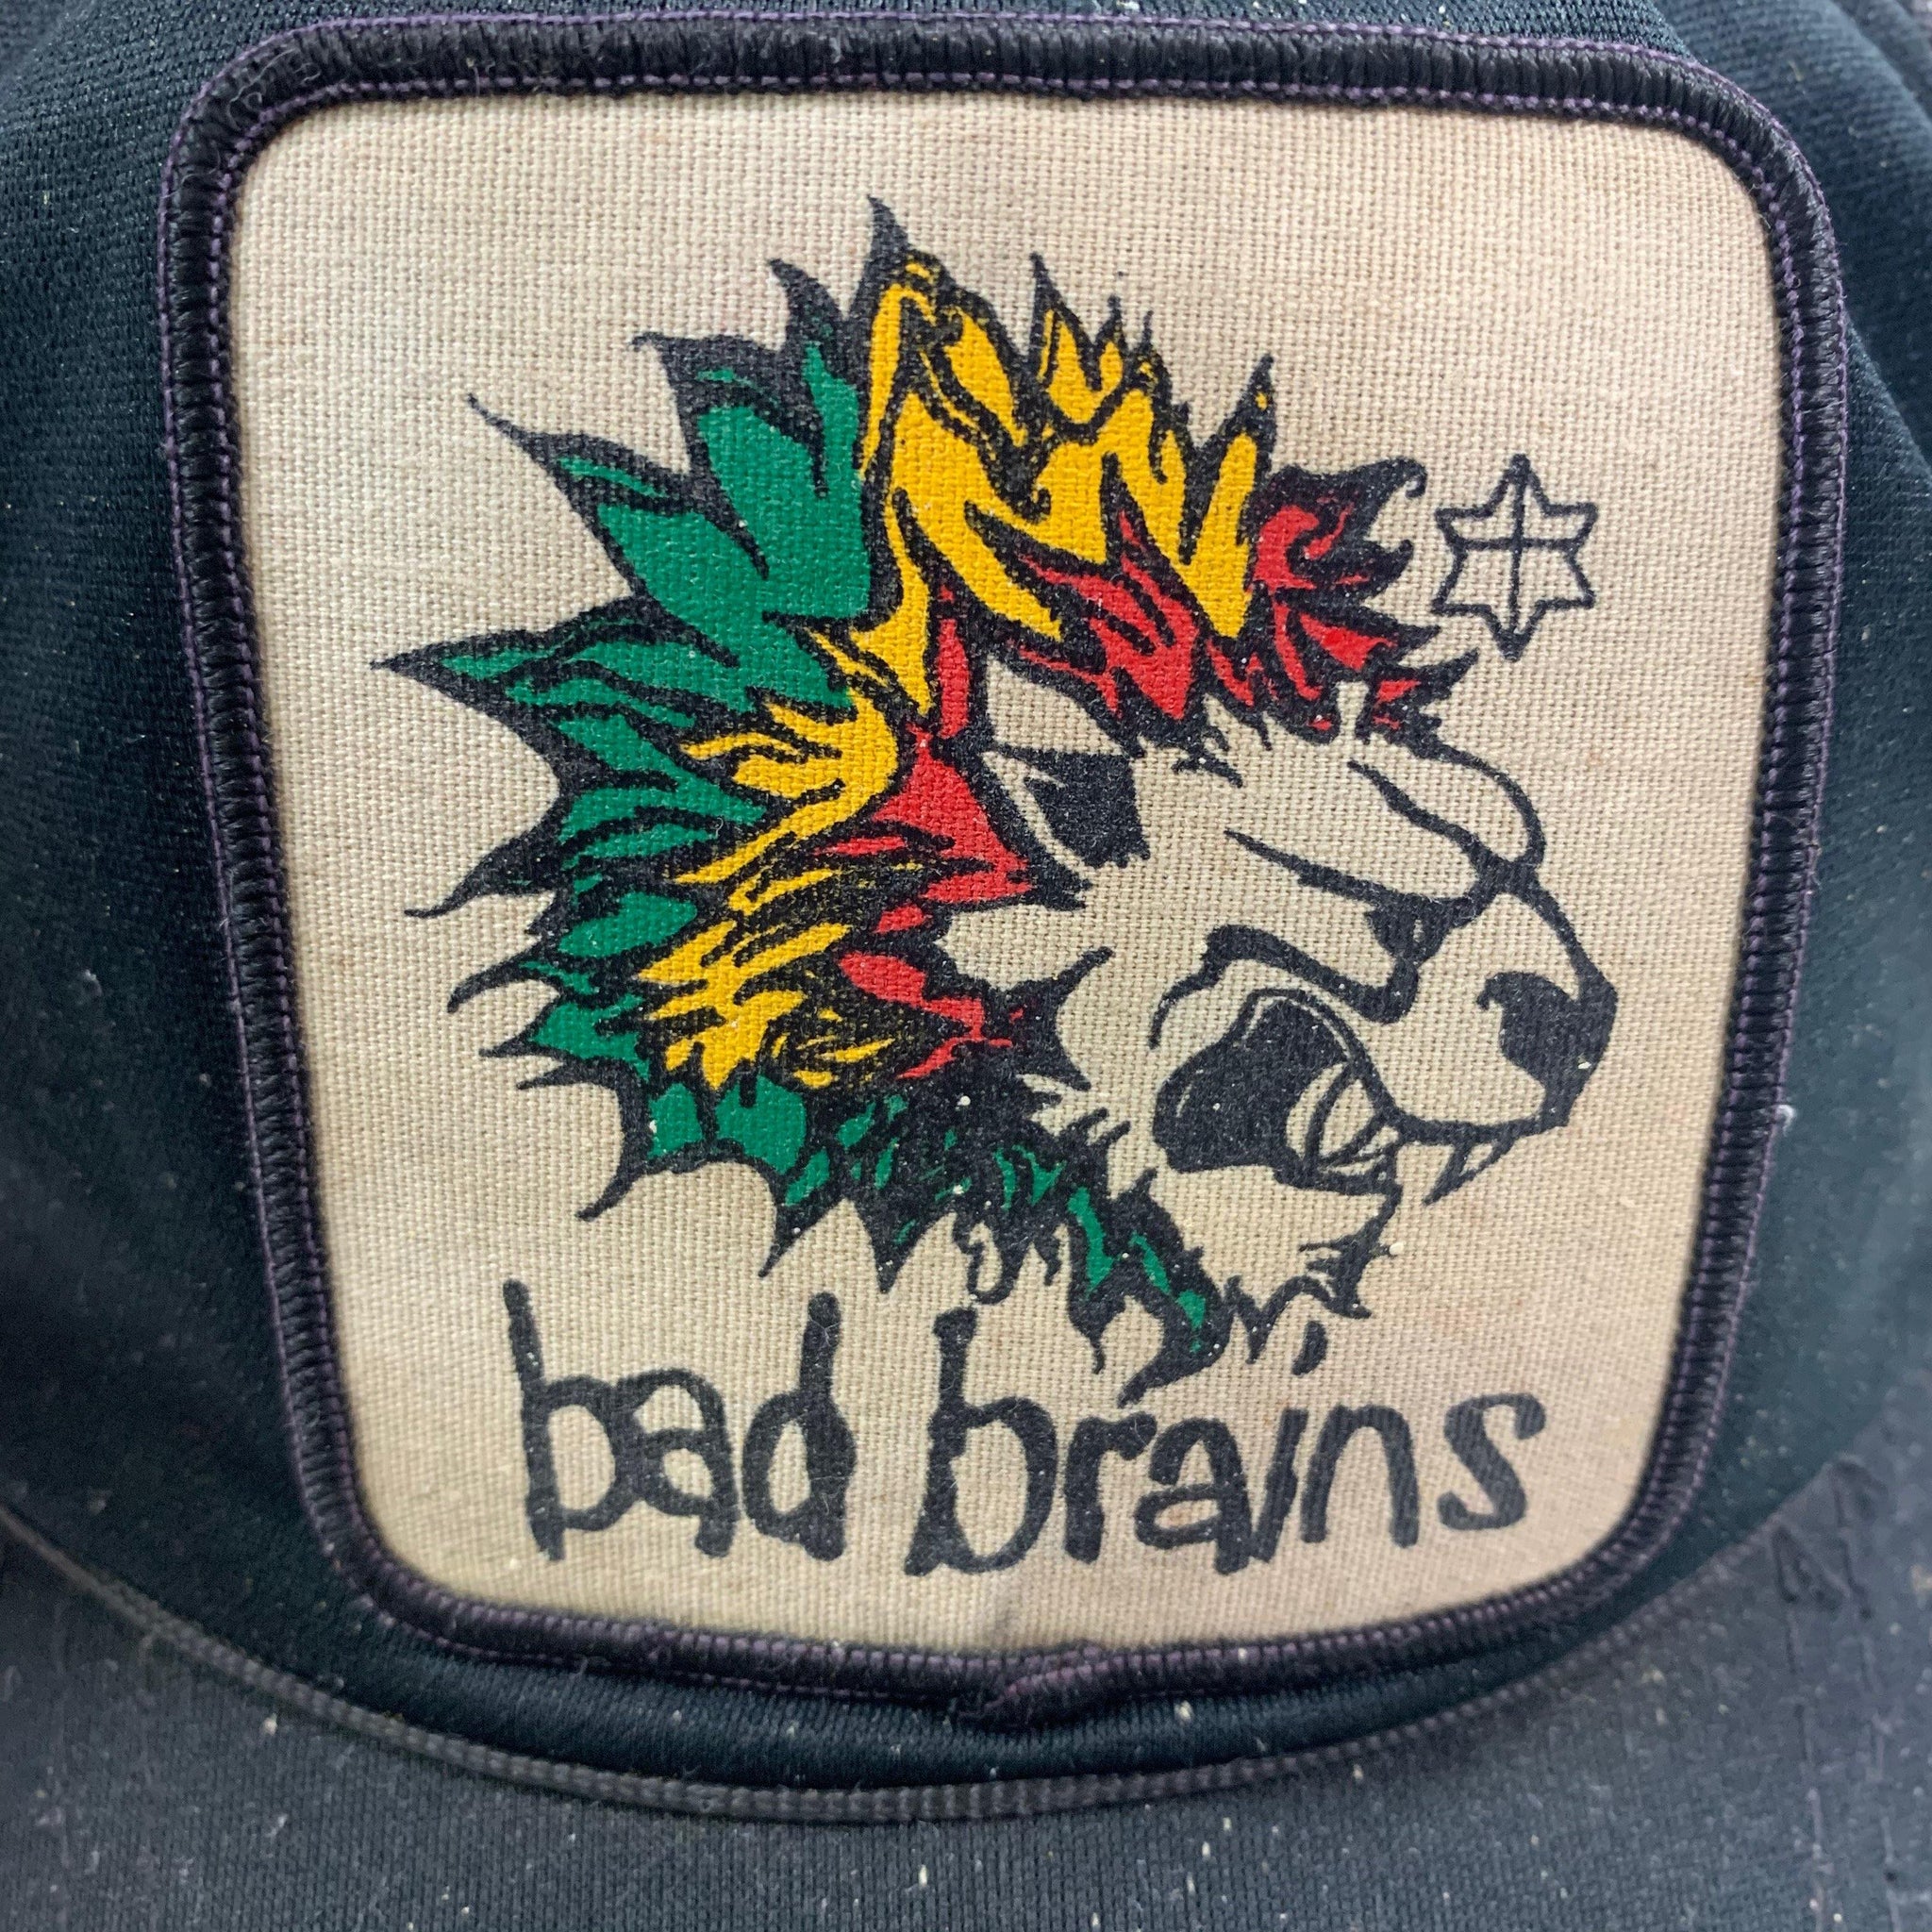 Vintage 80's Bad Brains Trucker Hat